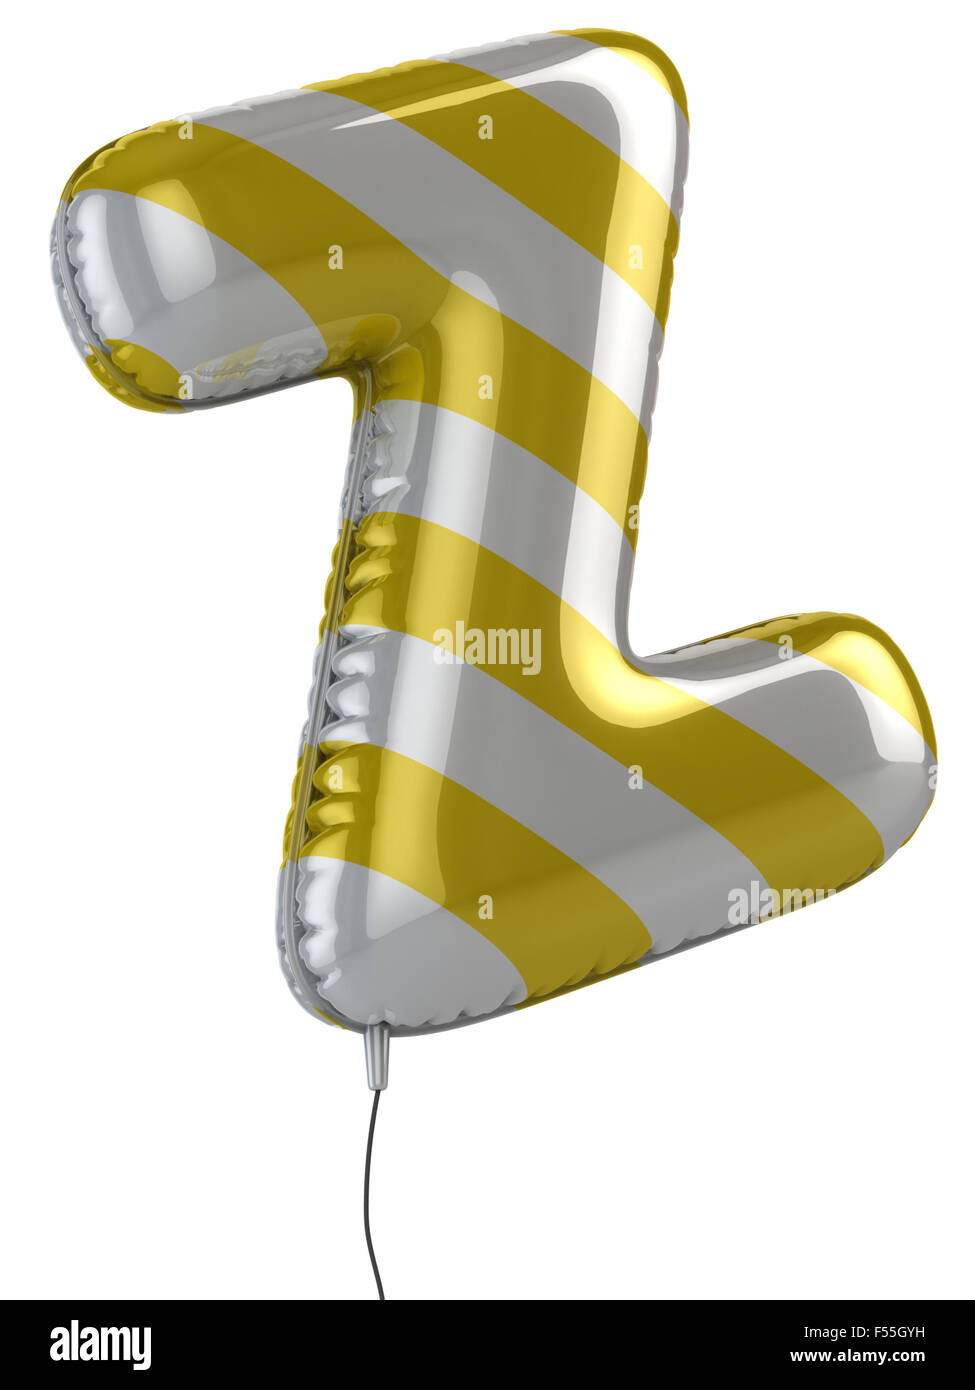 letter Z balloon 3d illustration Stock Photo